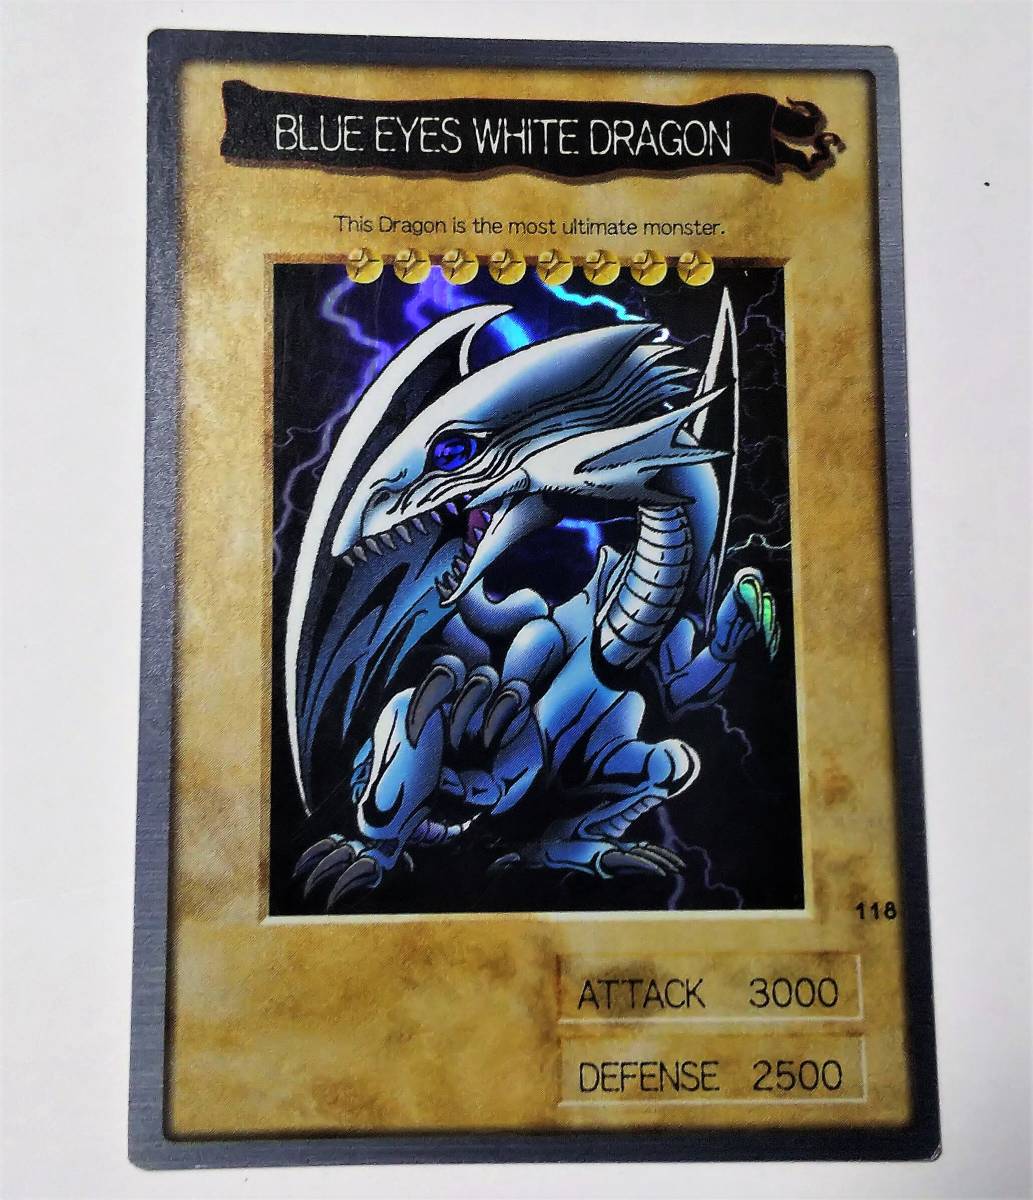 遊戯王 デュエルモンスターズ ブルーアイズ・ホワイト・ドラゴン 青眼の白龍 118 BLUE EYES WHITE DRAGON 英語